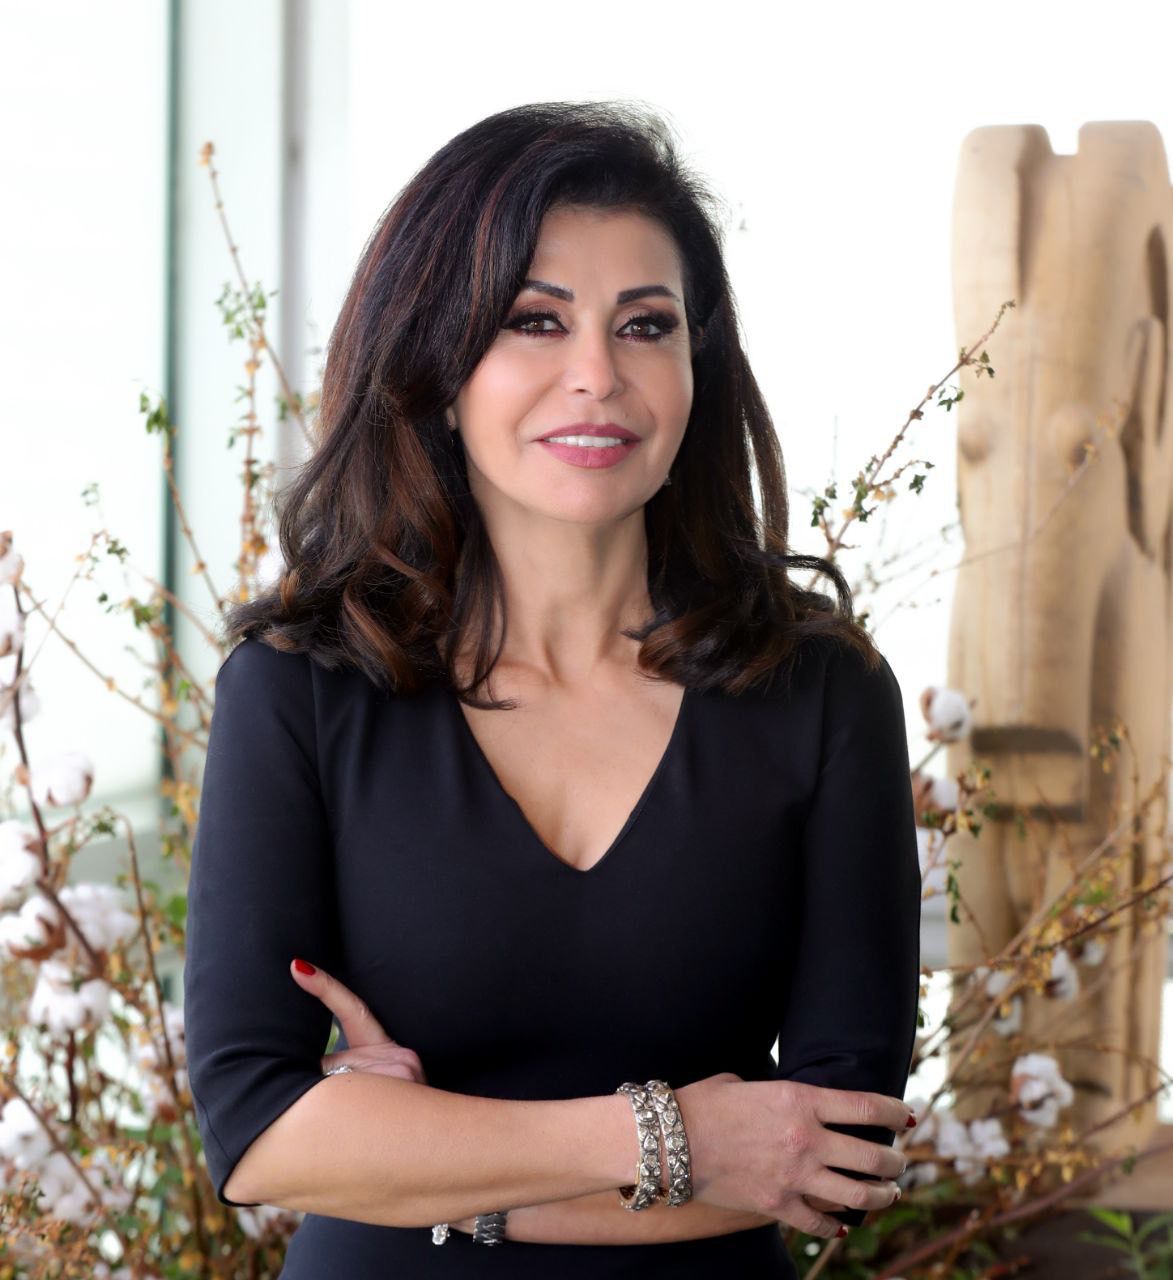 اللبنانية خليل: المرأة العربية رمز للنجاح وصاحبة كفاءة عالية